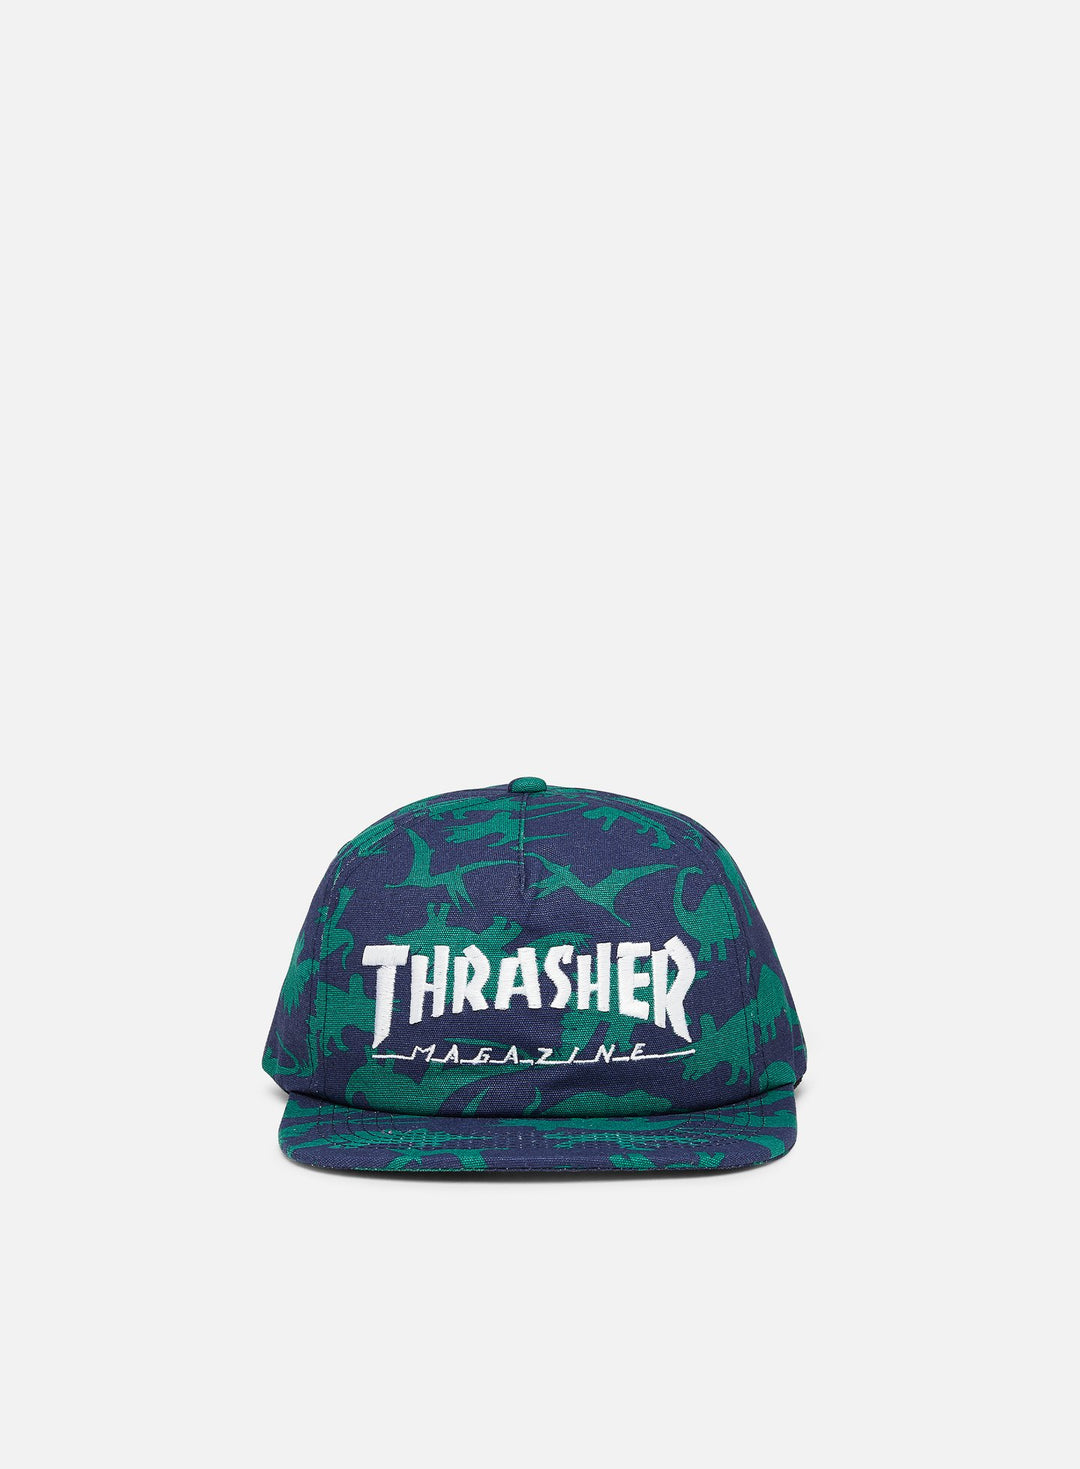 Thrasher Mag Logo Snapback